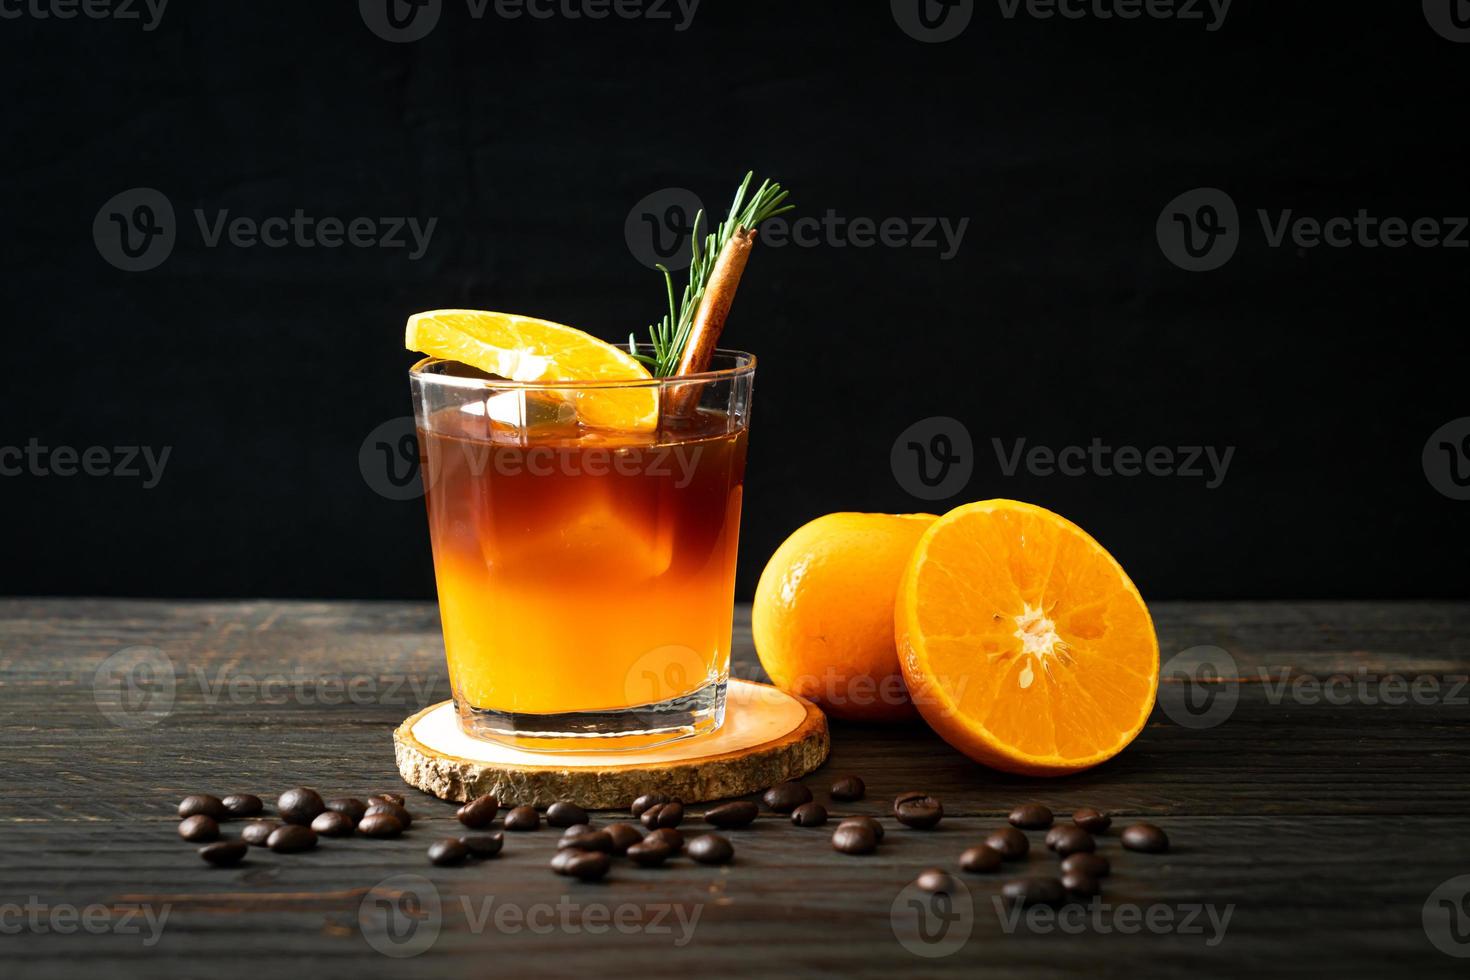 ett glas iced americano svart kaffe och lager av apelsin- och citronsaft dekorerad med rosmarin och kanel foto